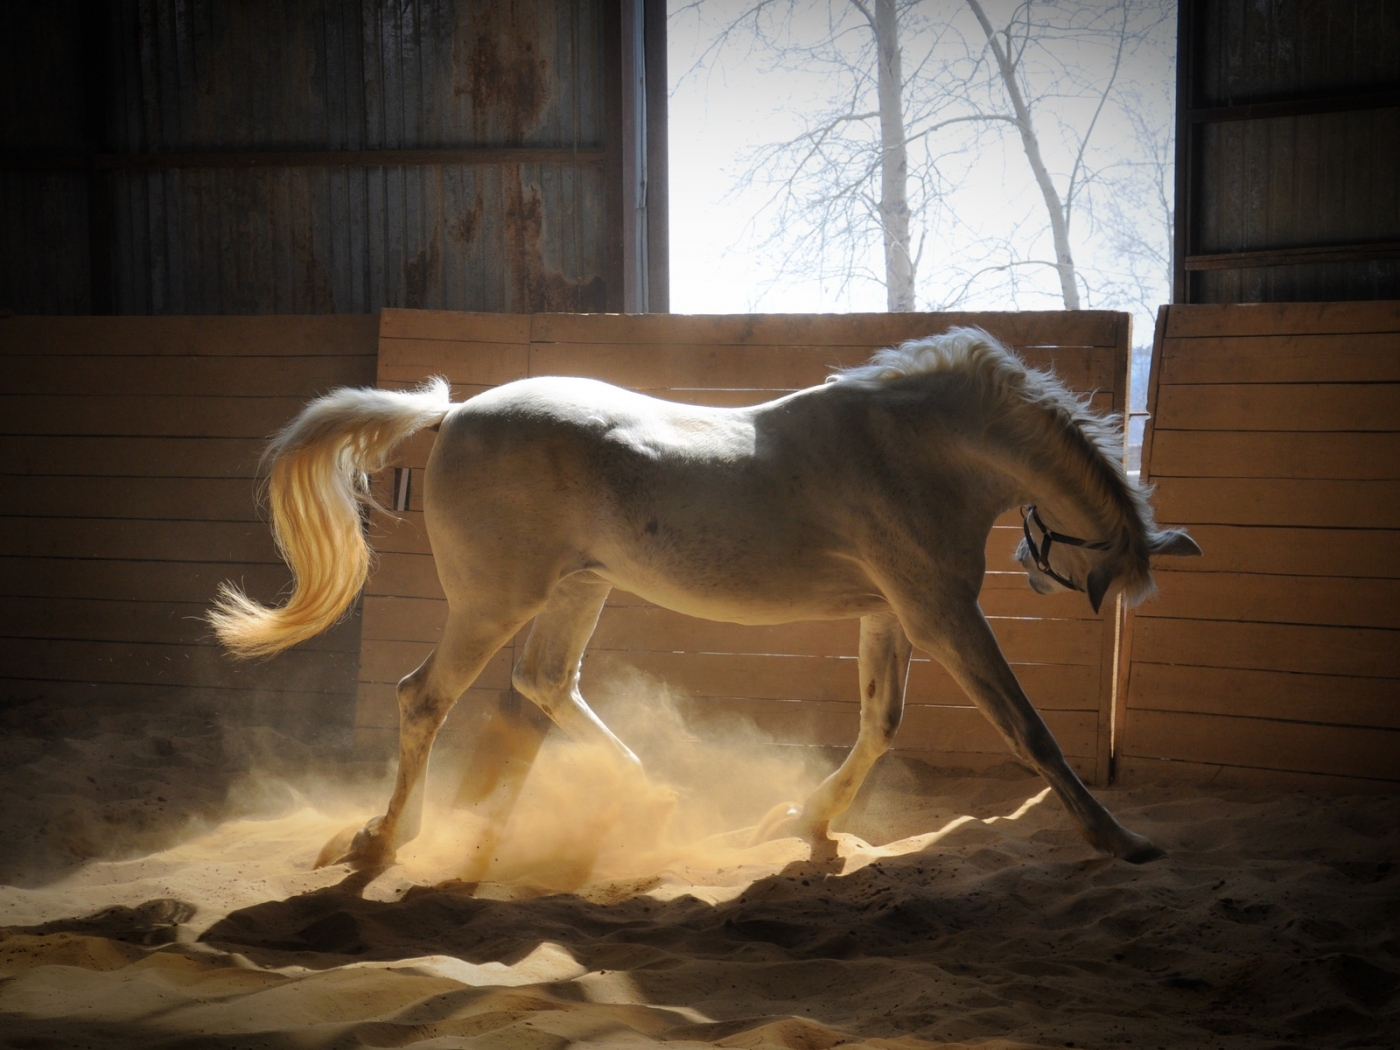 Windows Backgrounds horses, animals